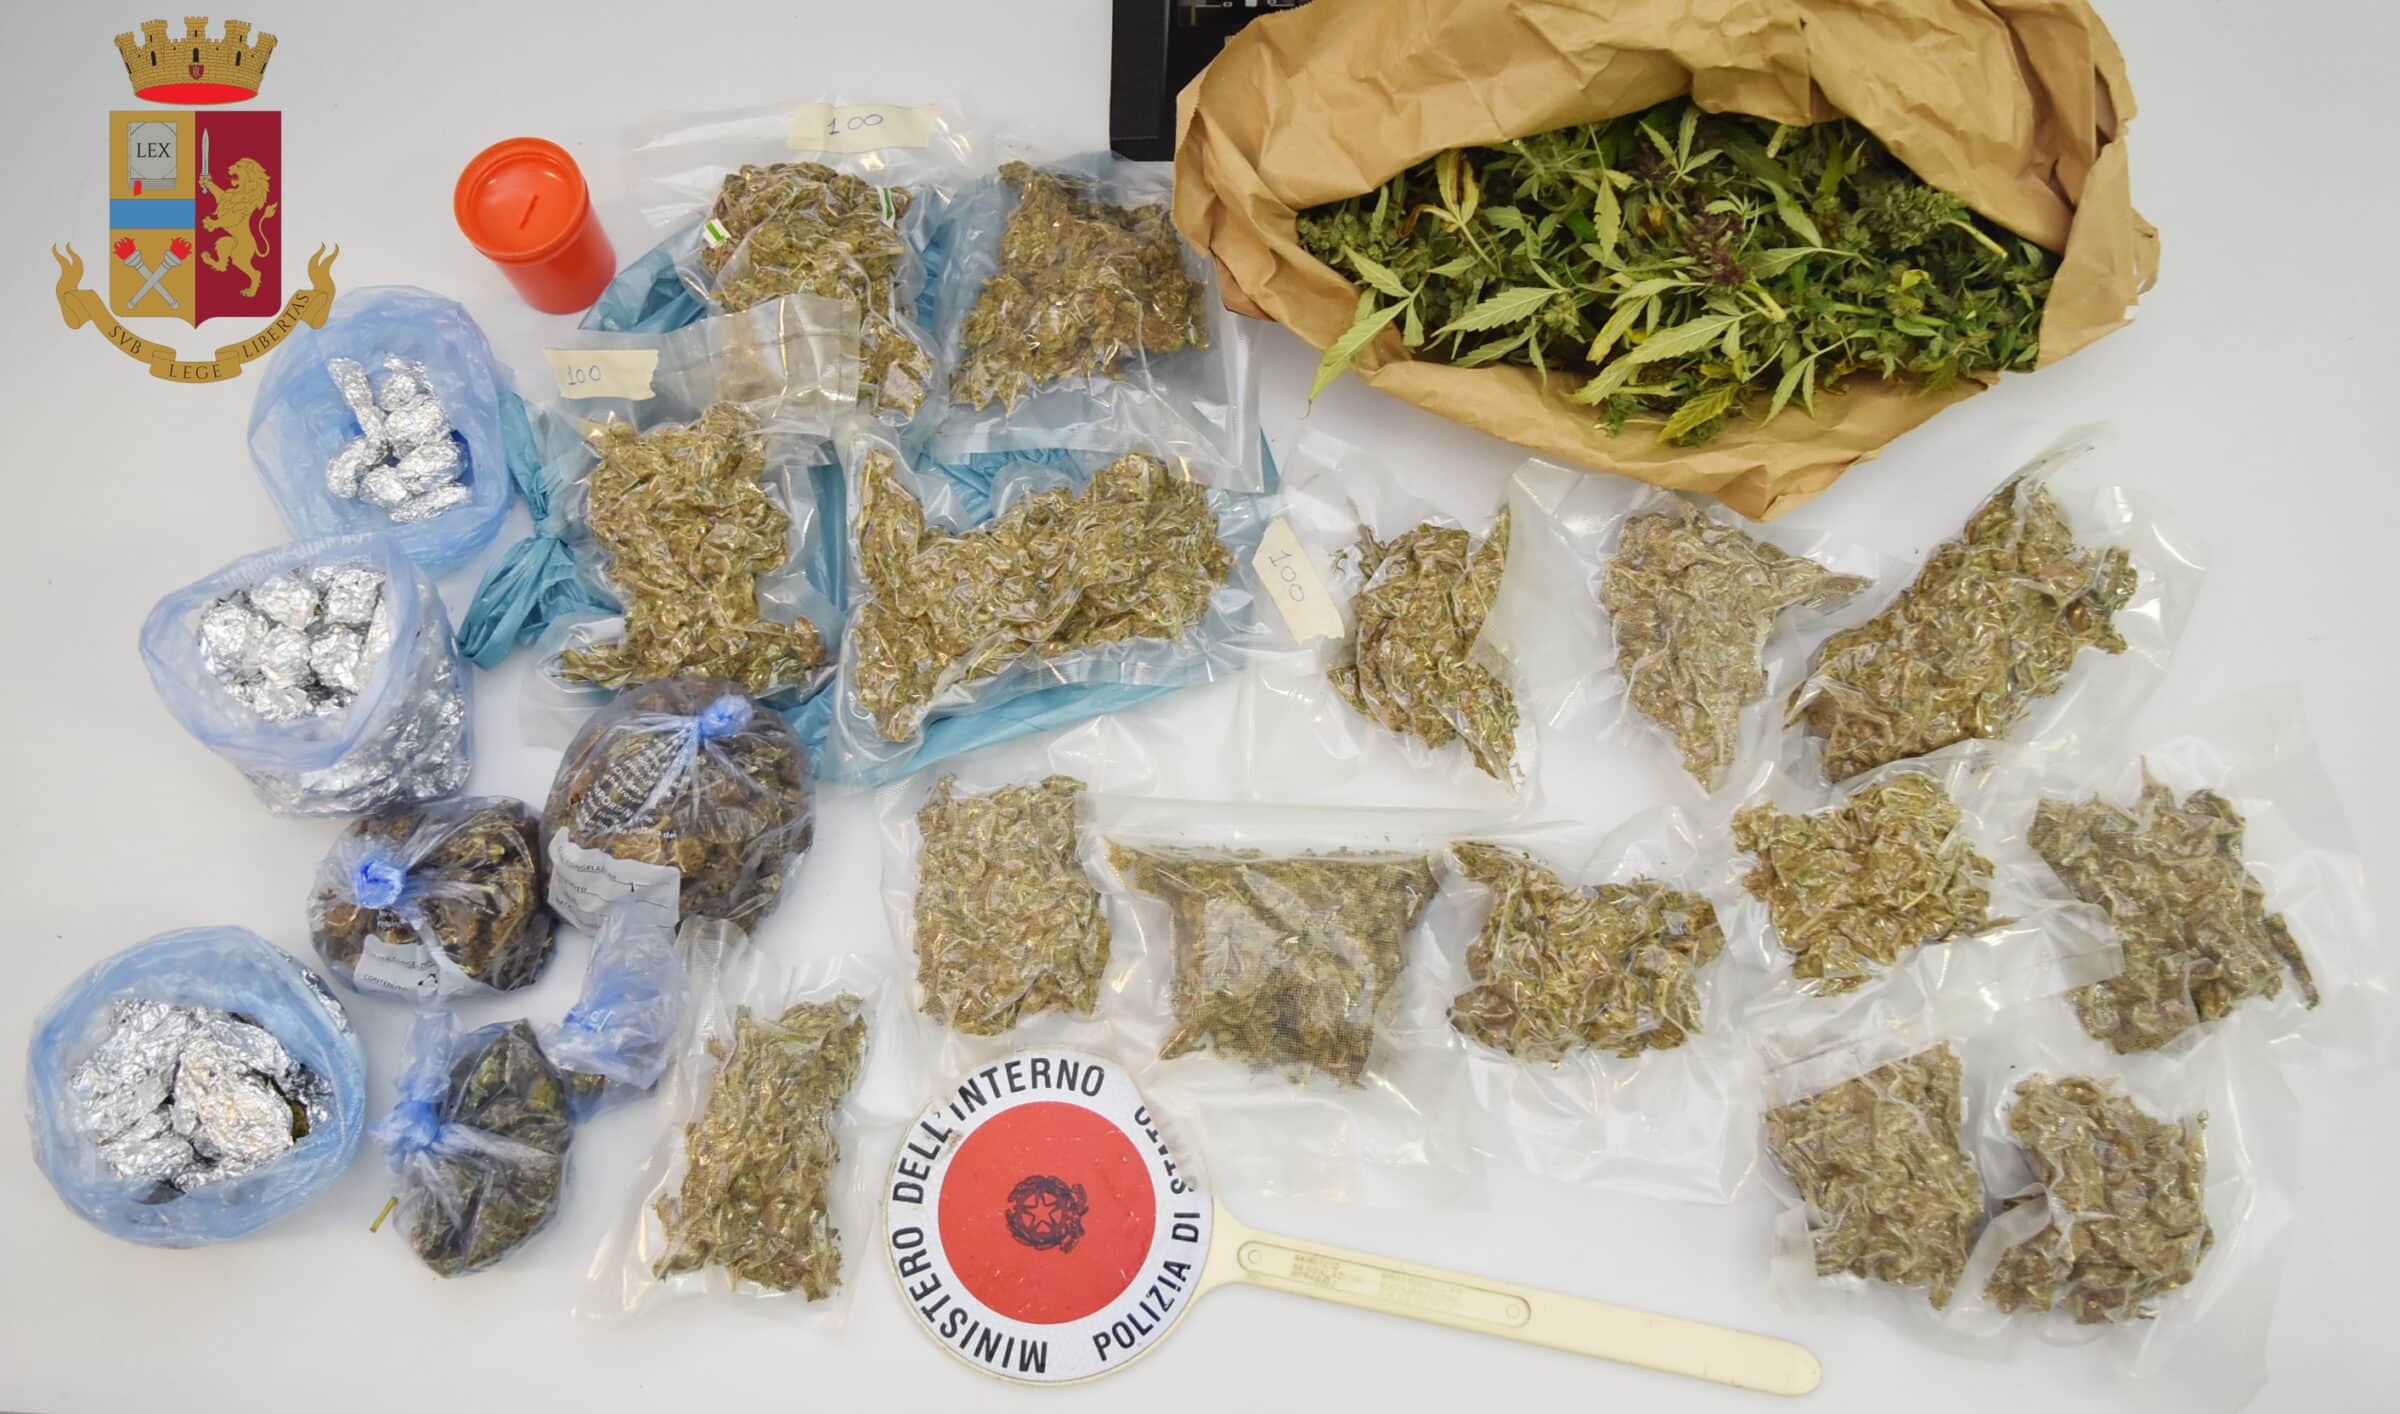 Servizi antidroga, sequestrato oltre 1 chilogrammo e mezzo di marijuana: arrestato 38enne